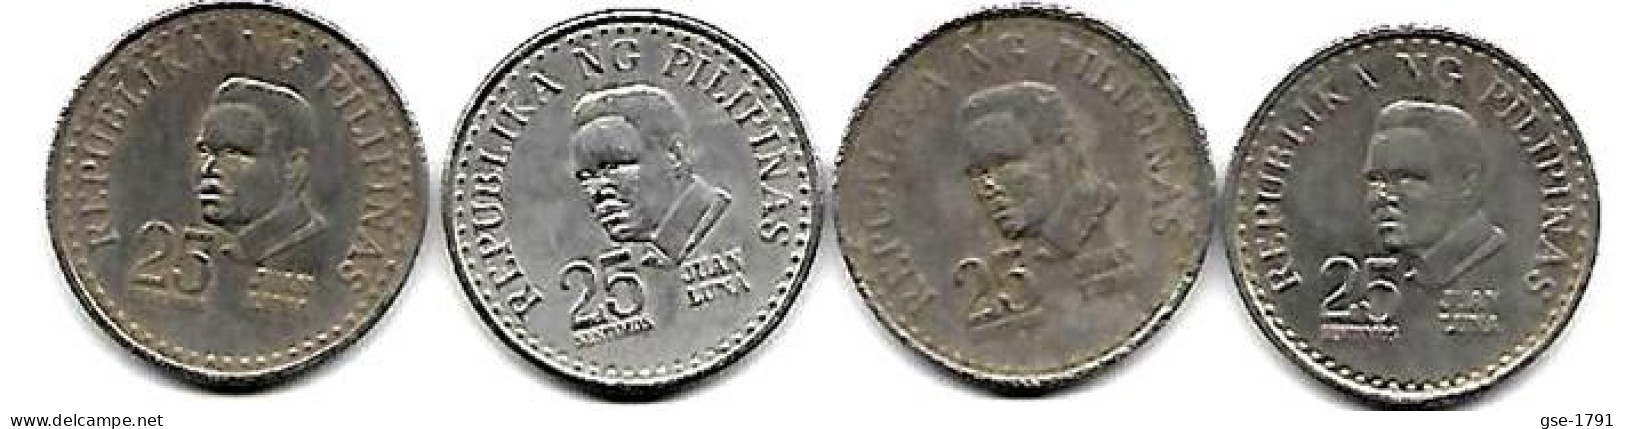 PHILIPPINES  Réforme Coinnage, 25 Sentimos, LUNA  KM 208  , 4 Pièces Série Complète  197 5à 1978  TTB - Filippijnen